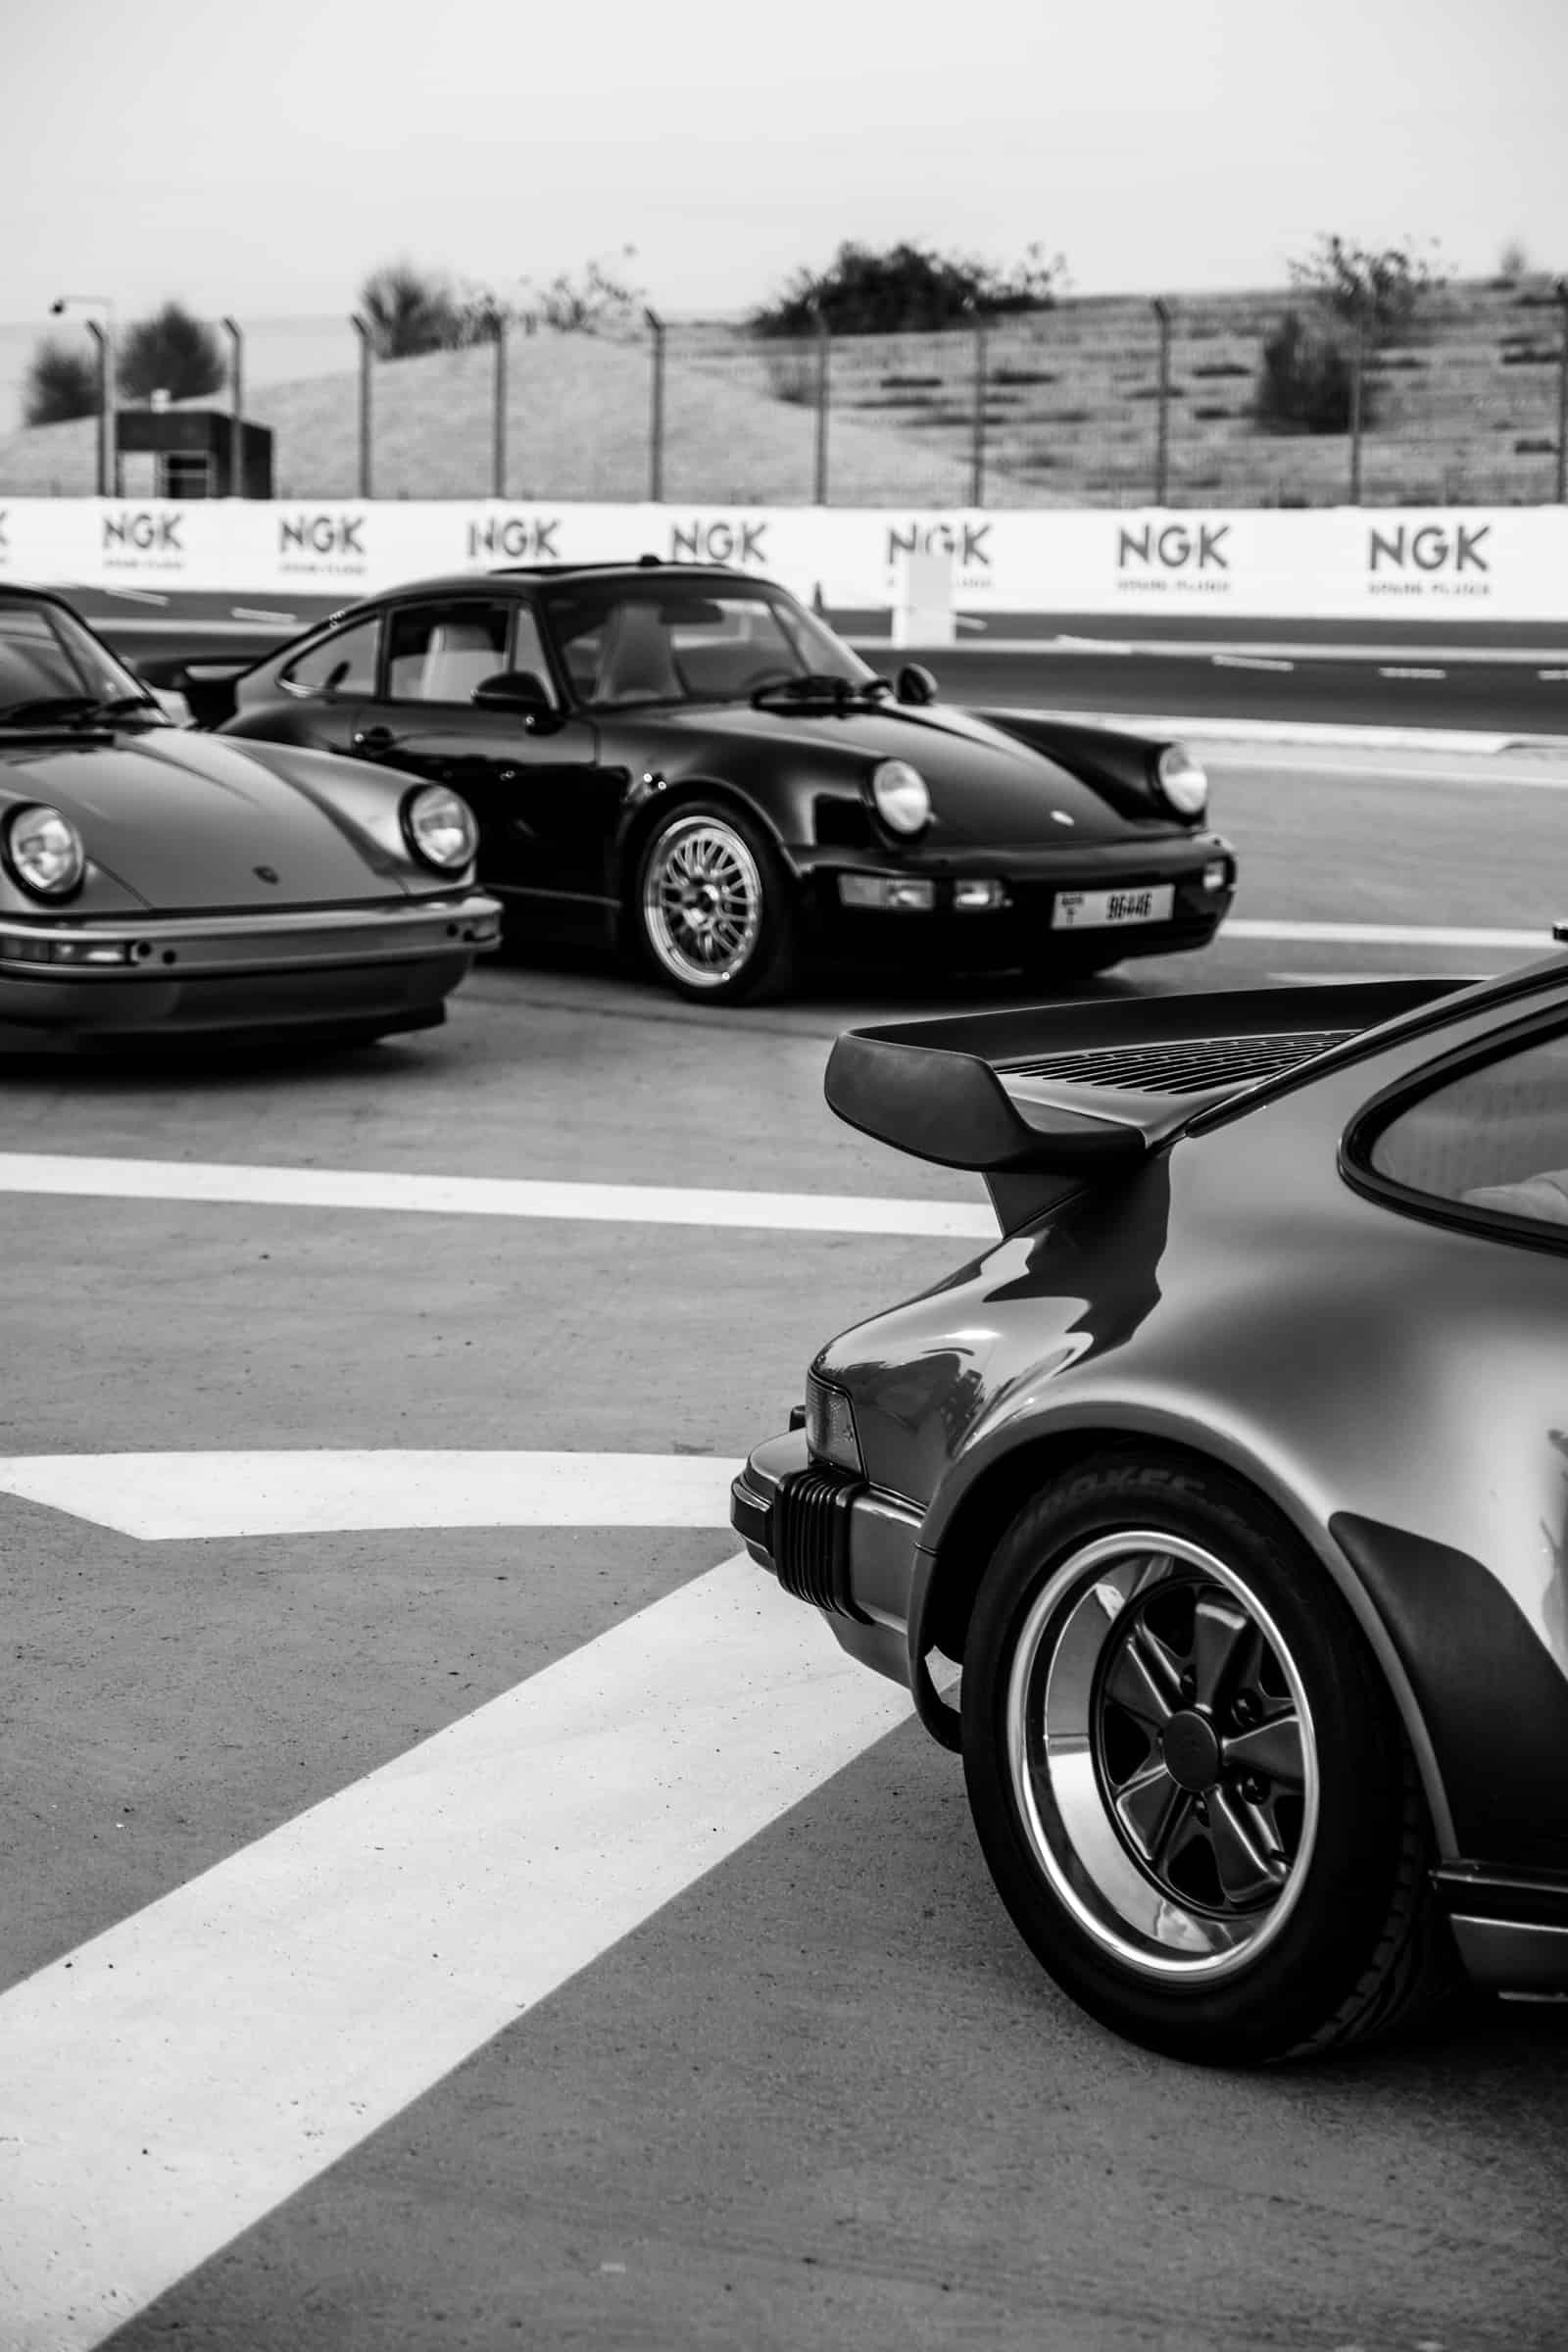 Three Porsches